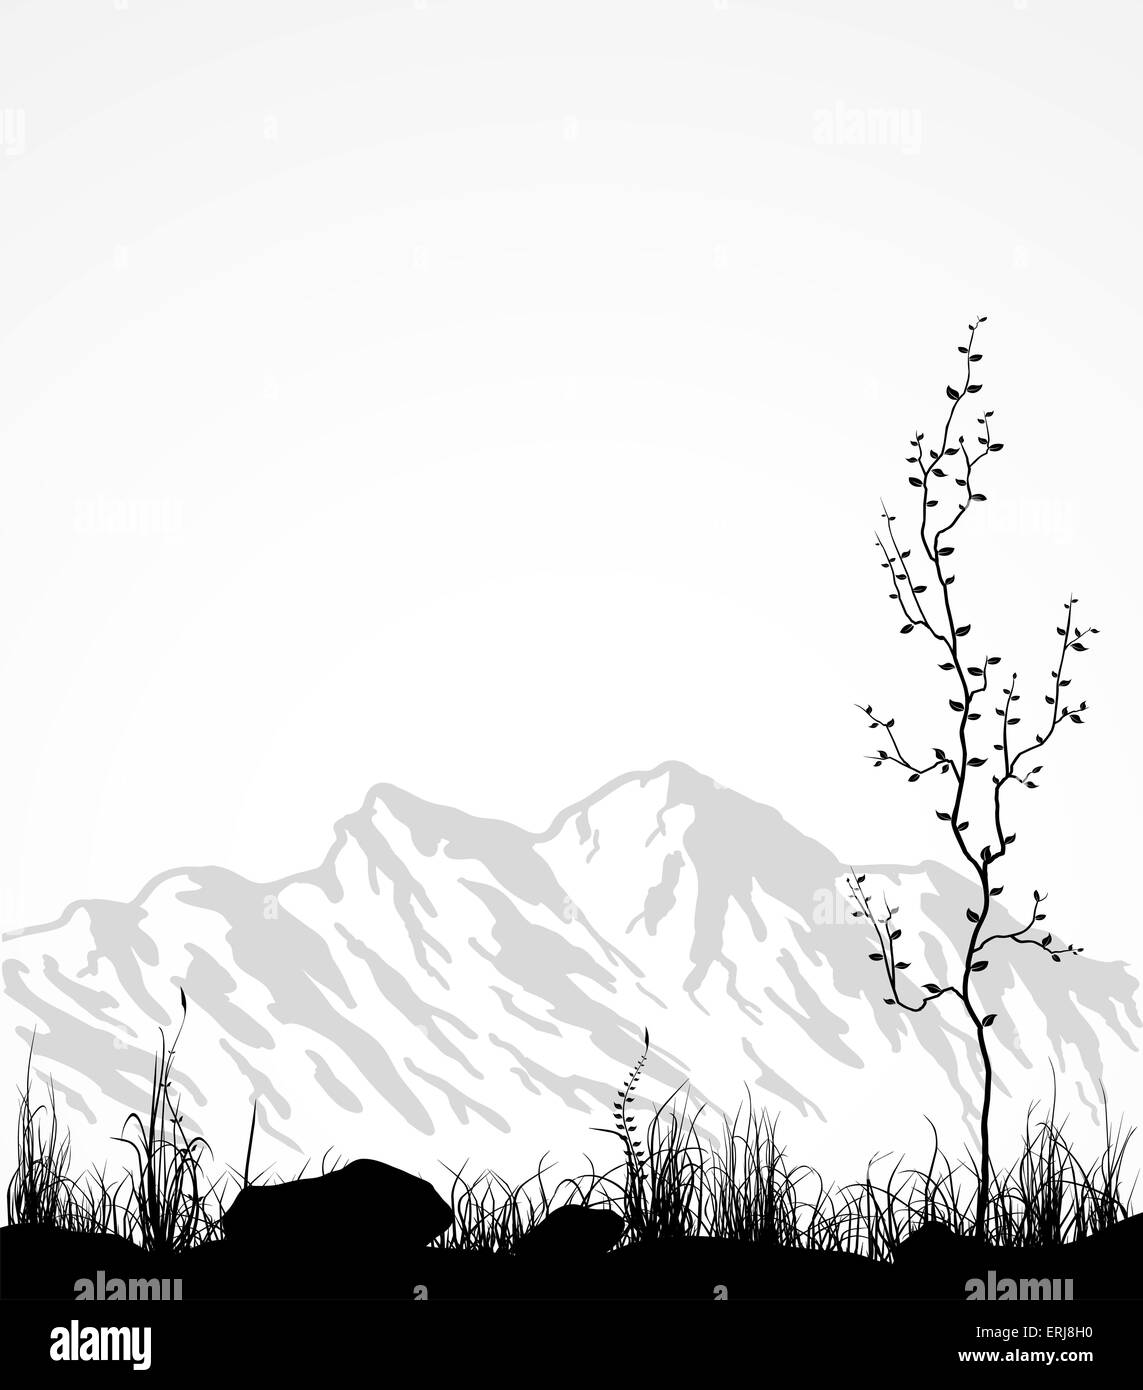 Landschaft mit Gebirge, Glas und Baum. Vektor-Illustration. Stock Vektor